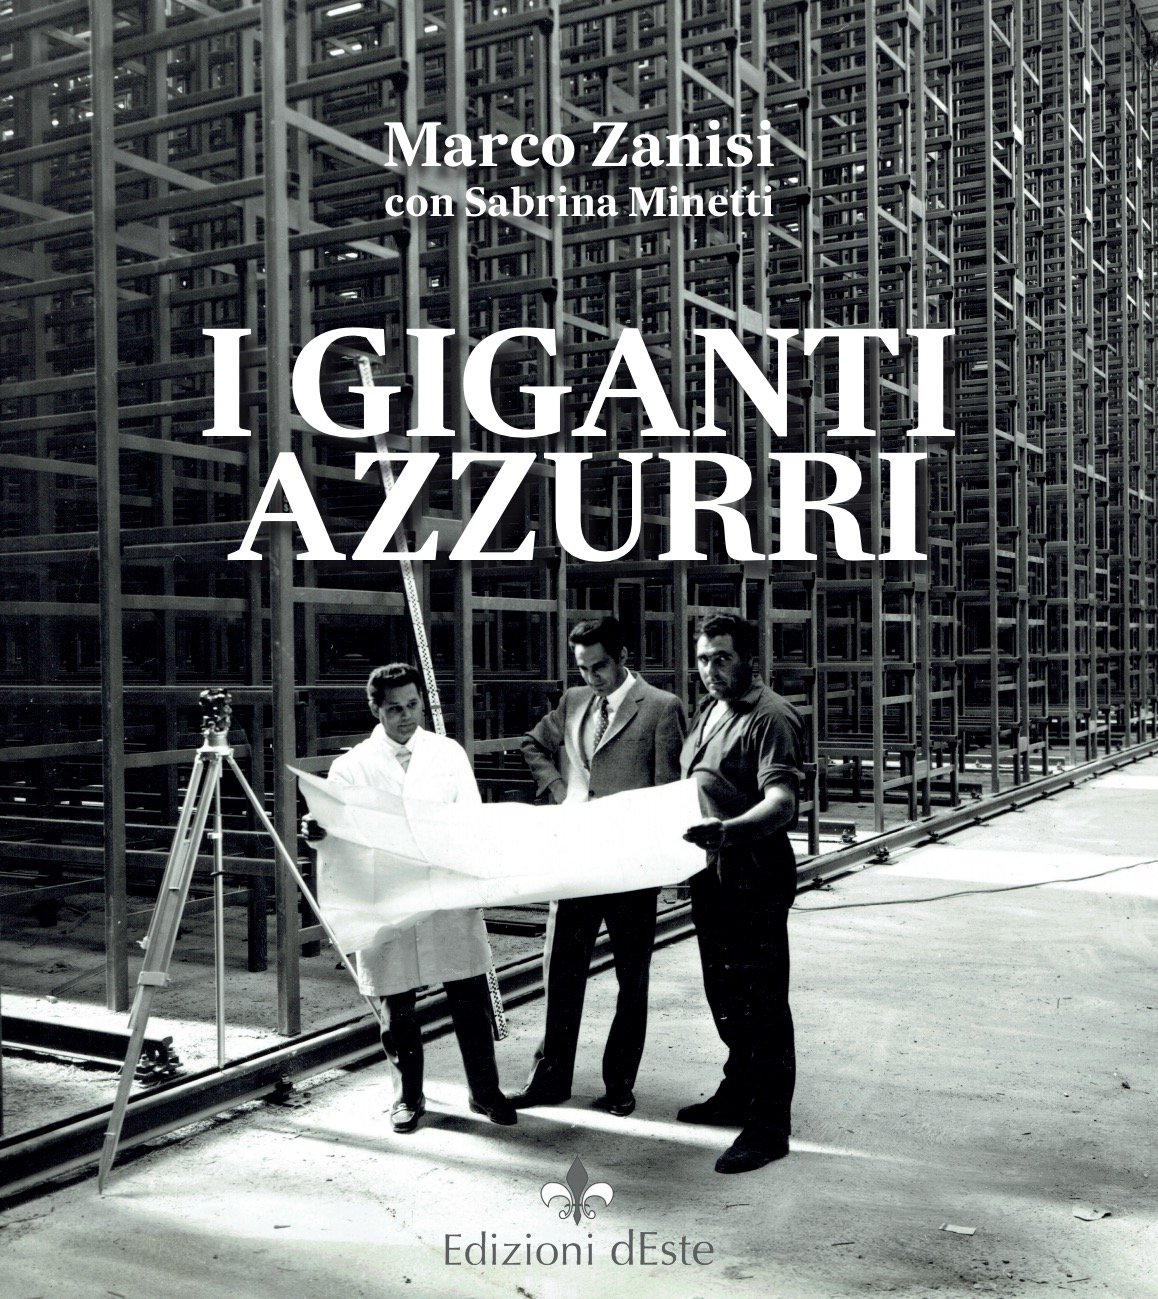 I giganti azzurri (Italian Edition)